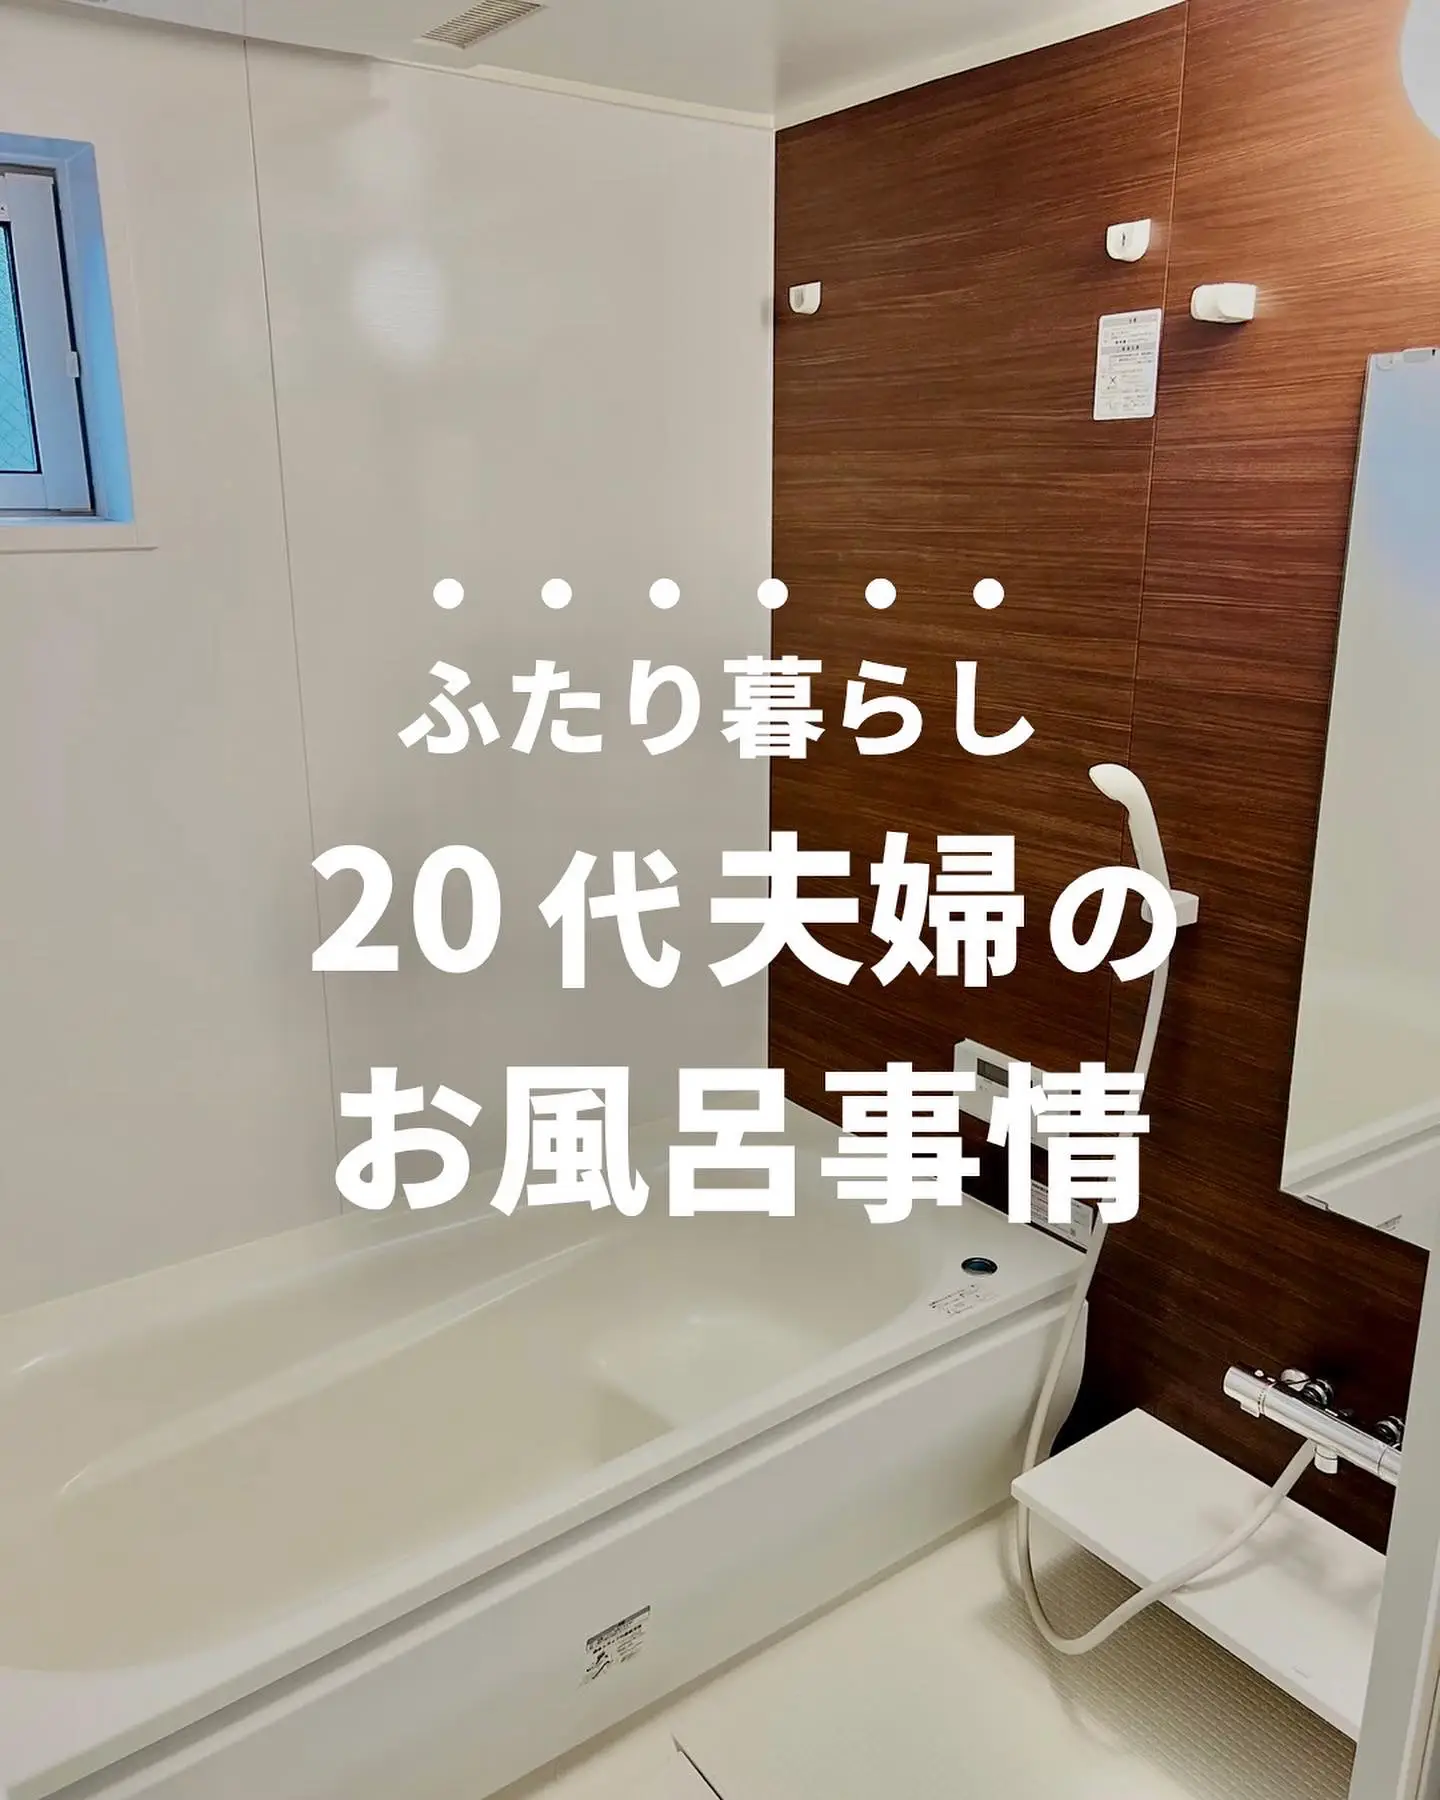 【ふたり暮らし】20代の夫婦のお風呂事情の画像 (1枚目)